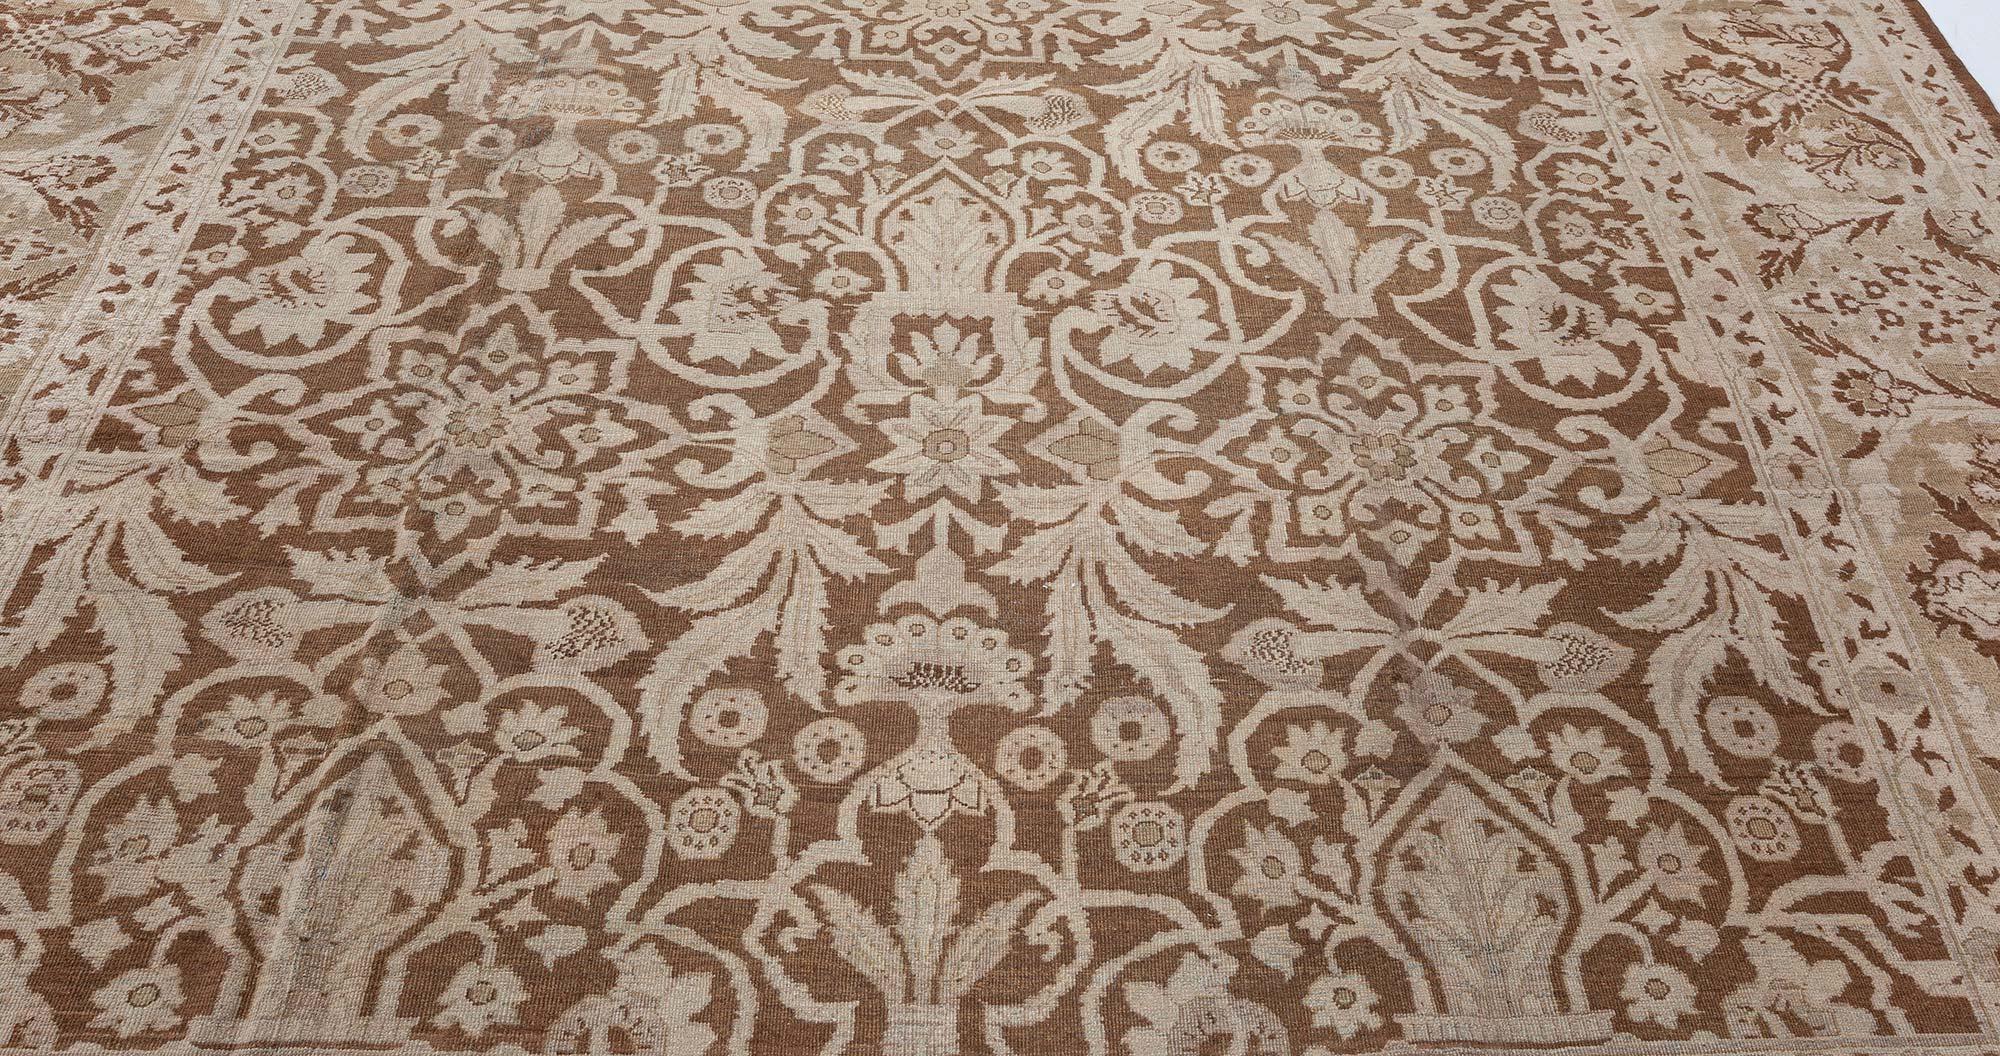 19th century Indian Amritsar botanic brown handwoven wool rug
Size: 11'5